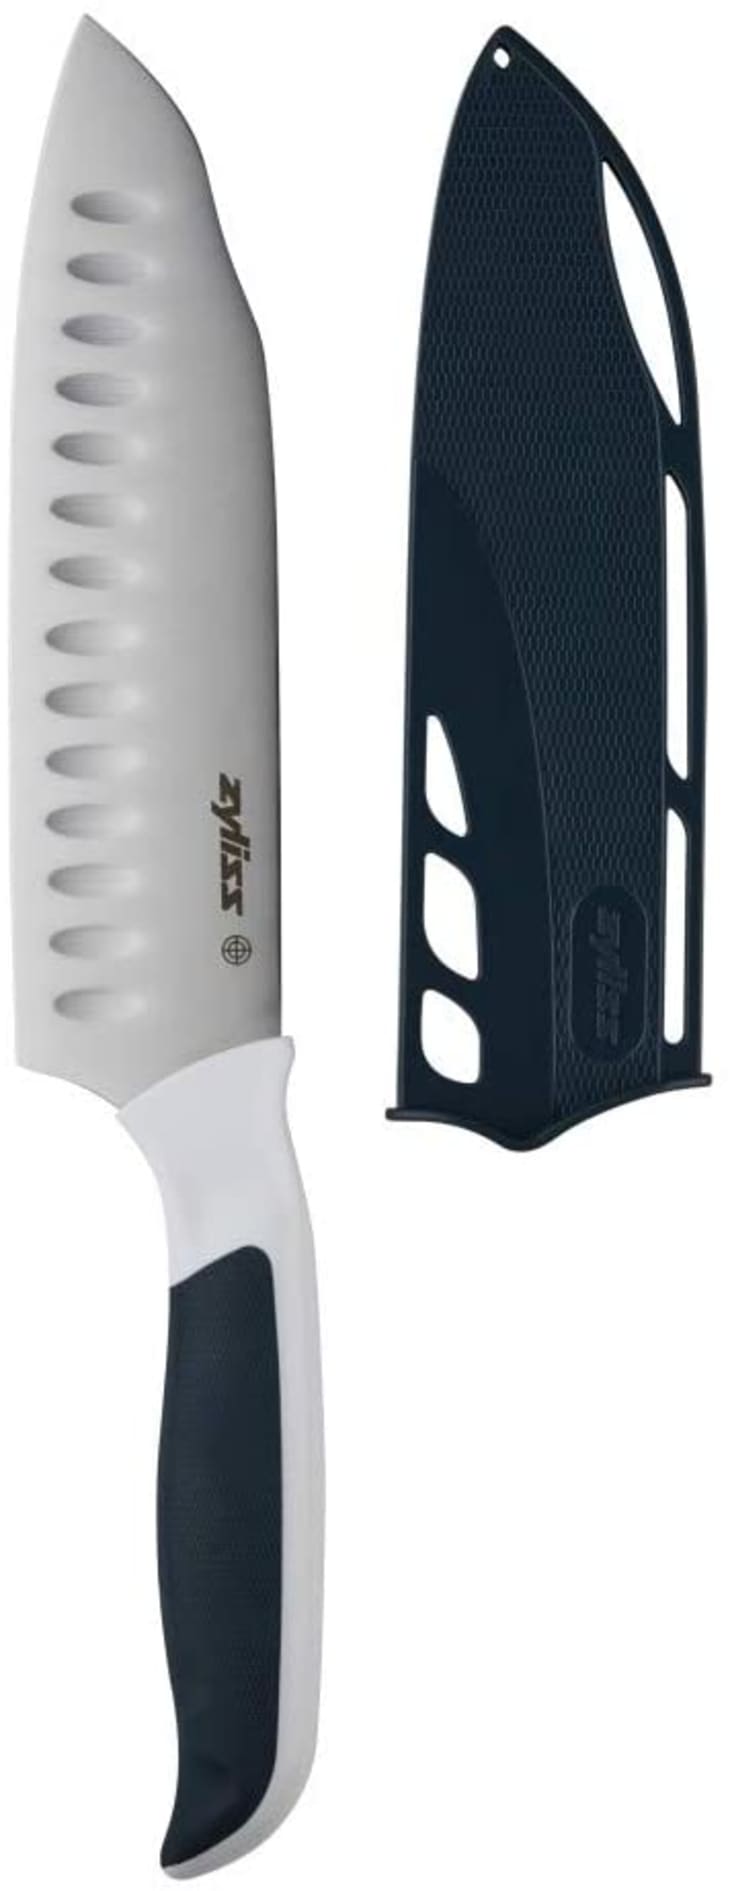 Kid-Safe Knife Set - Essentials